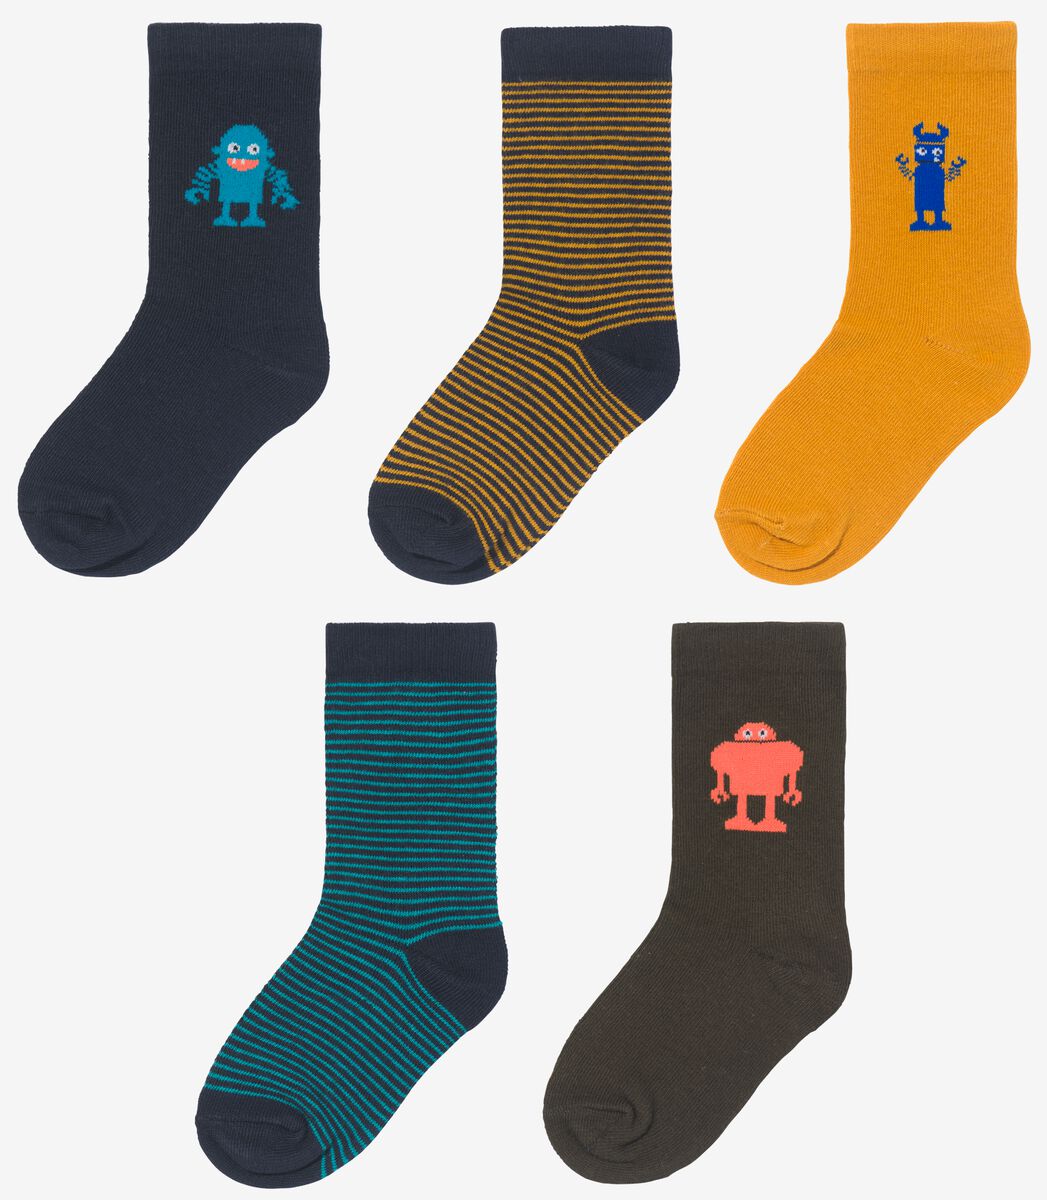 Kinder-Socken mit Baumwolle, 5 Paar blau 35/38 - 4360064 - HEMA